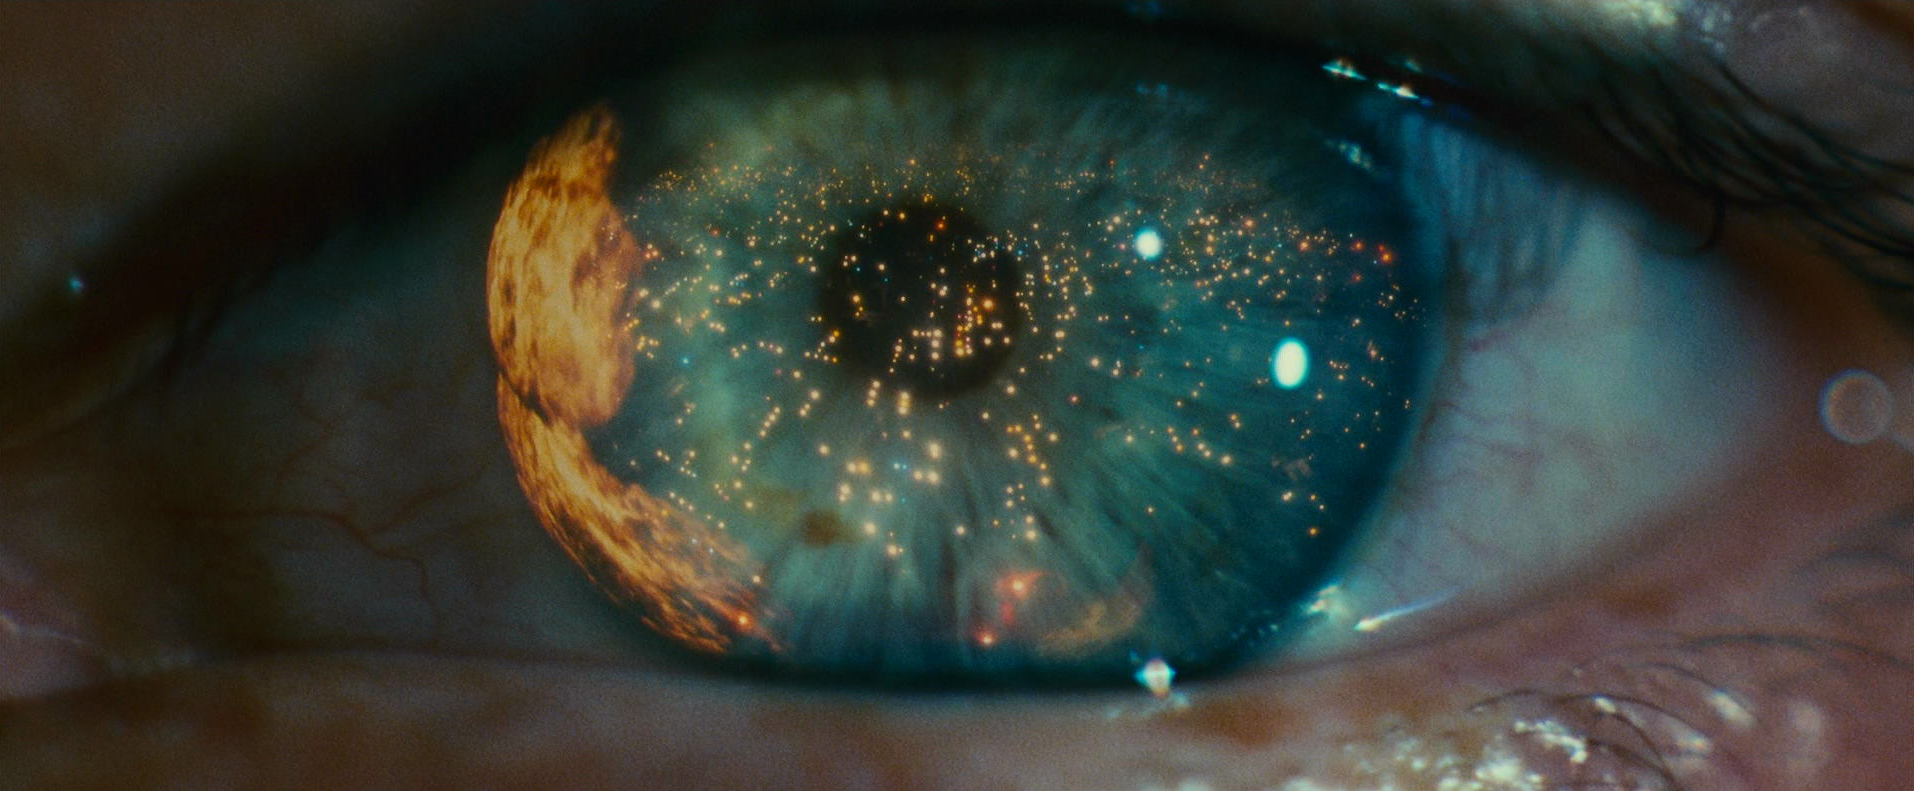 Blade Runner - Ridley Scott - eye - fire - reflection - opening